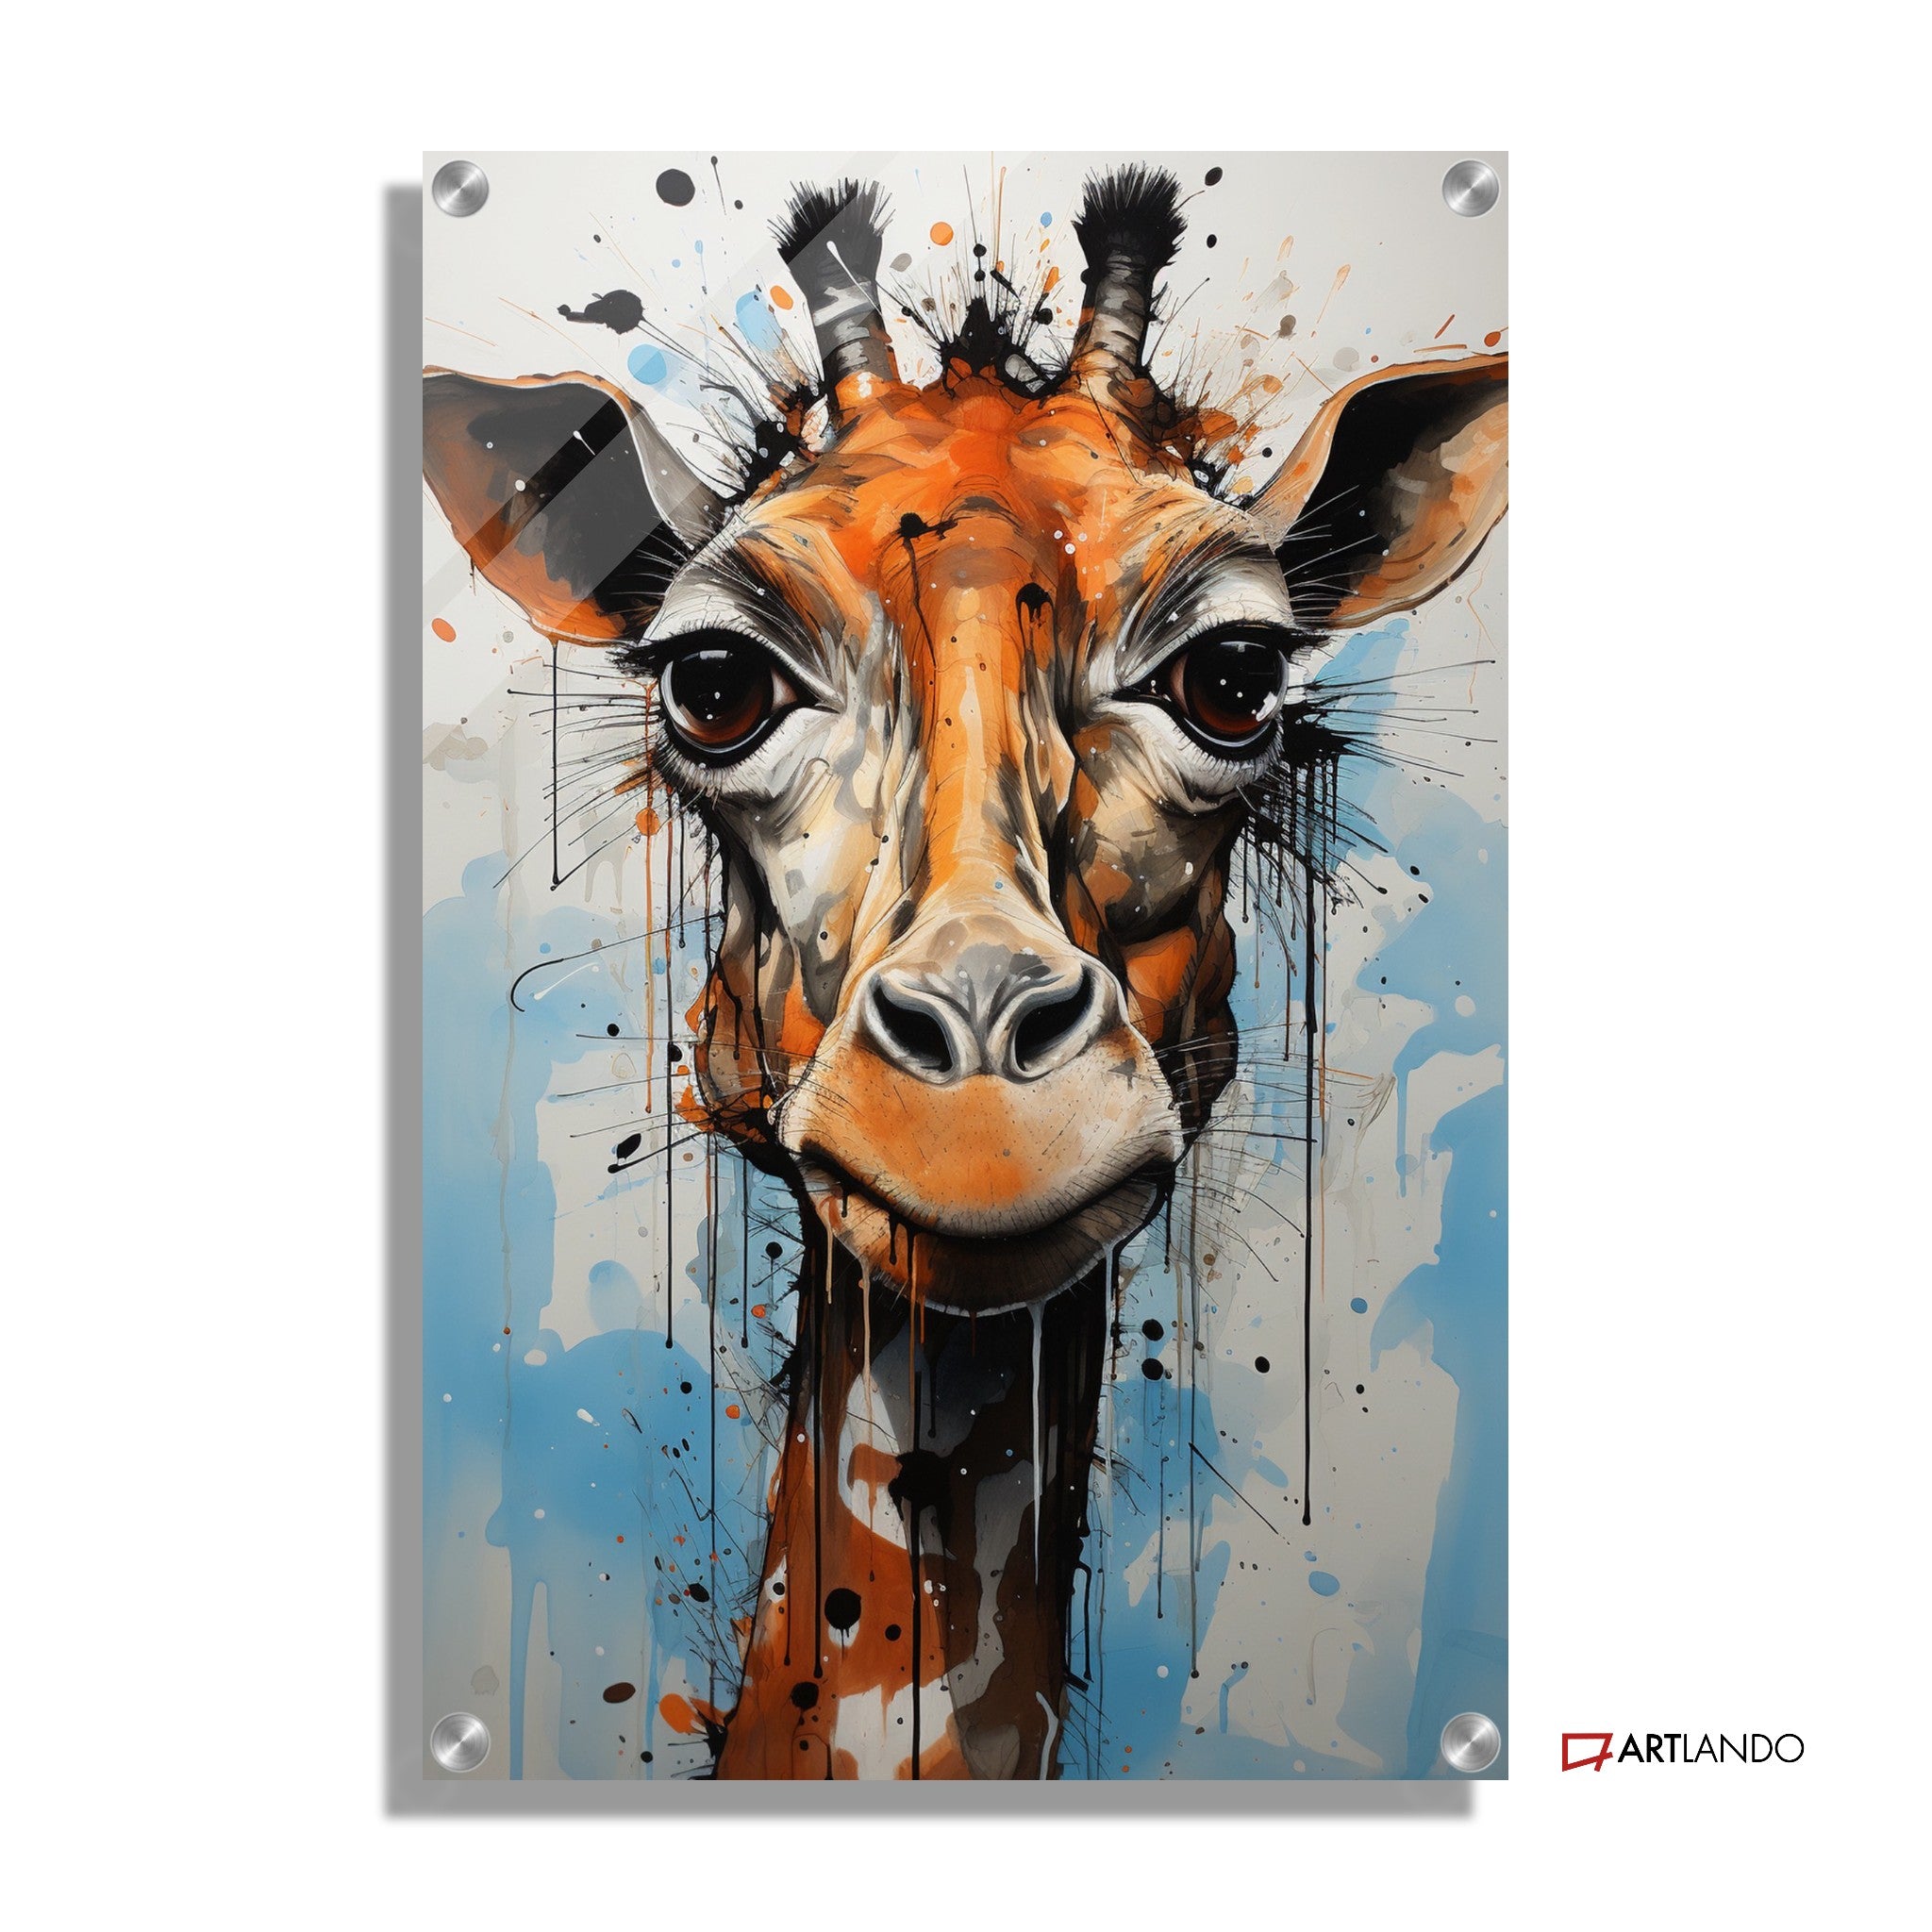 Graffiti einer Giraffe mit buntem Hintergrund